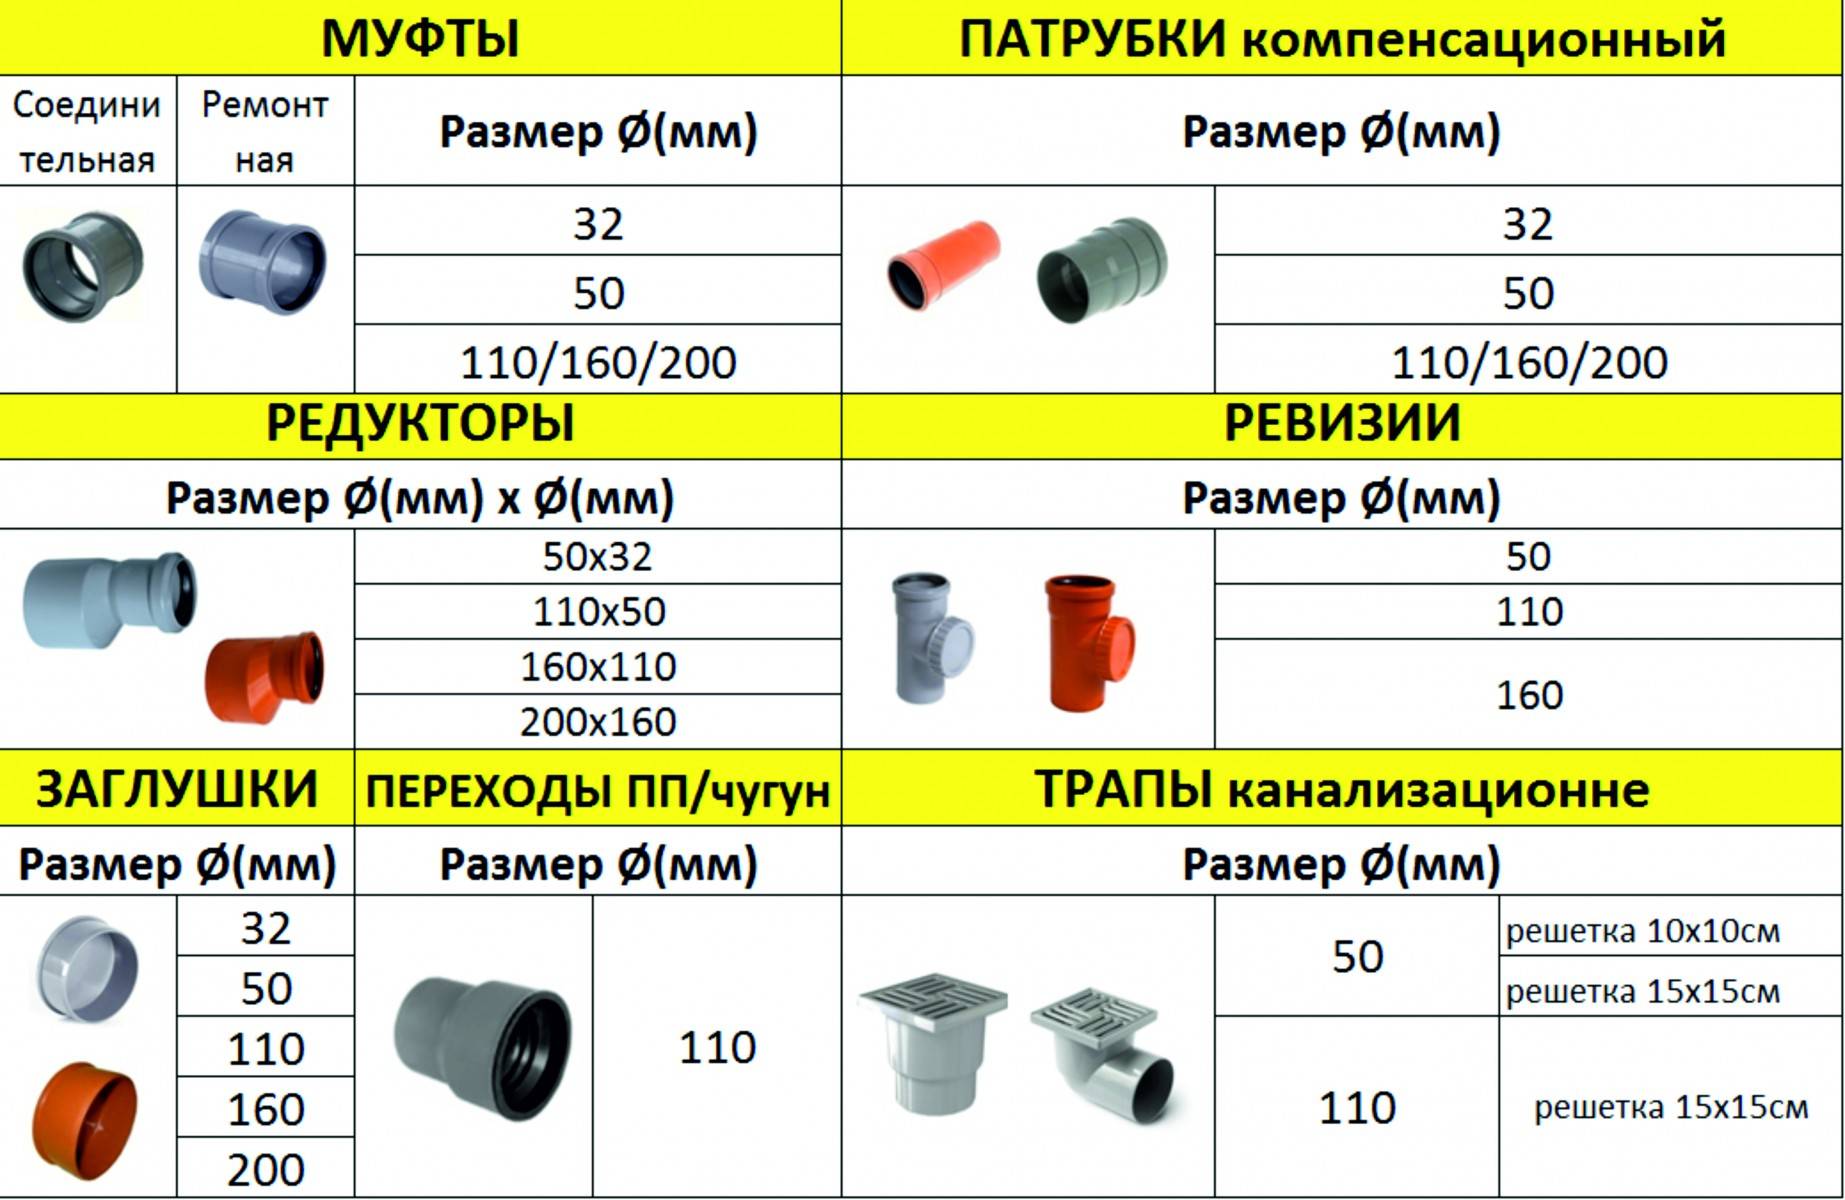 ✅ трубы канализационные для наружной канализации — какие лучше - dnp-zem.ru